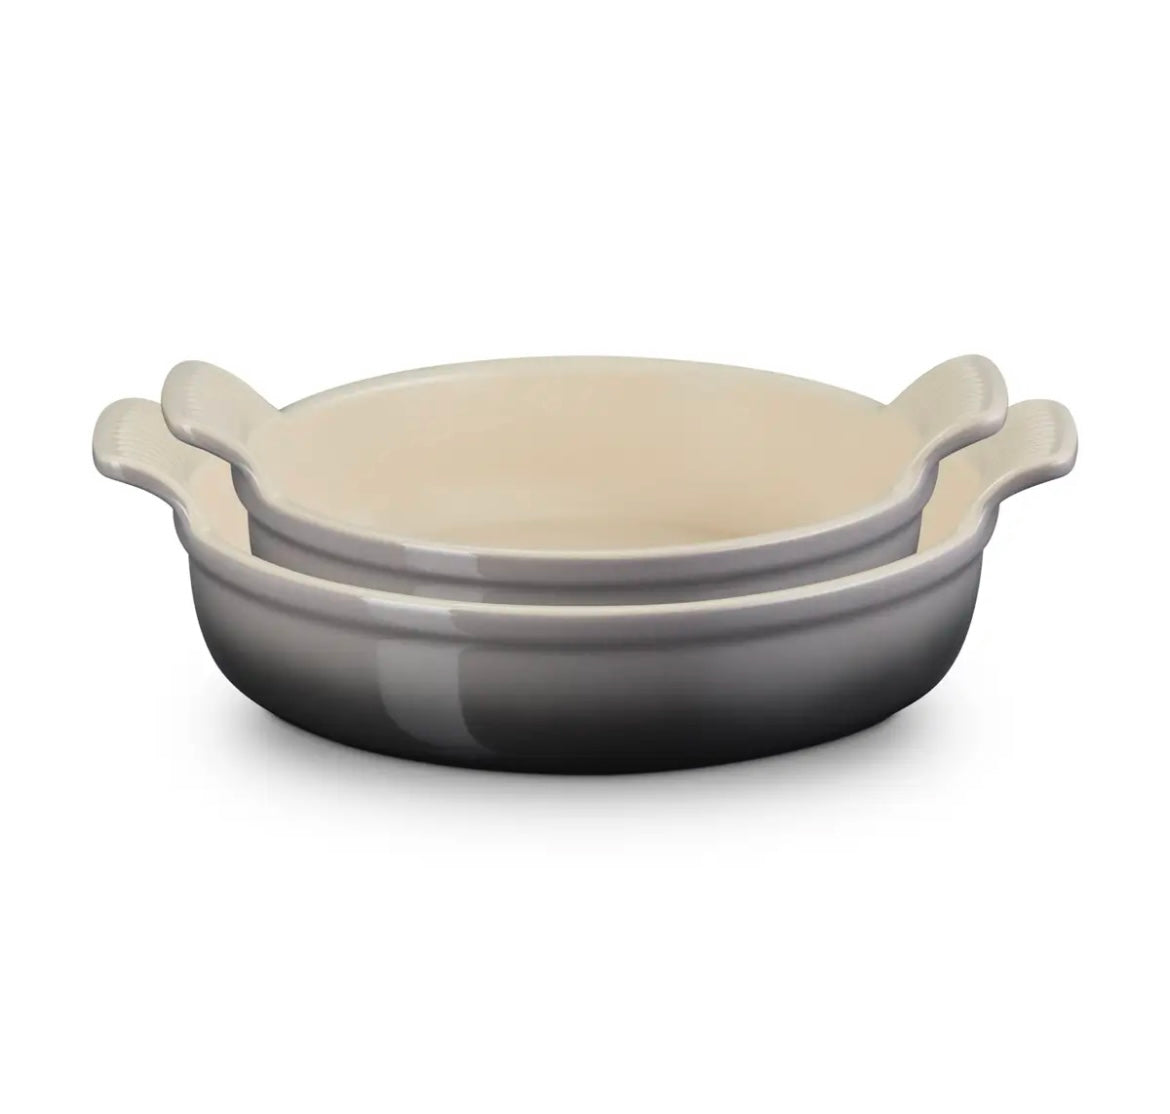 Le Creuset Stoneware Set Of 2 Heritage Round Baking Dishes Flint